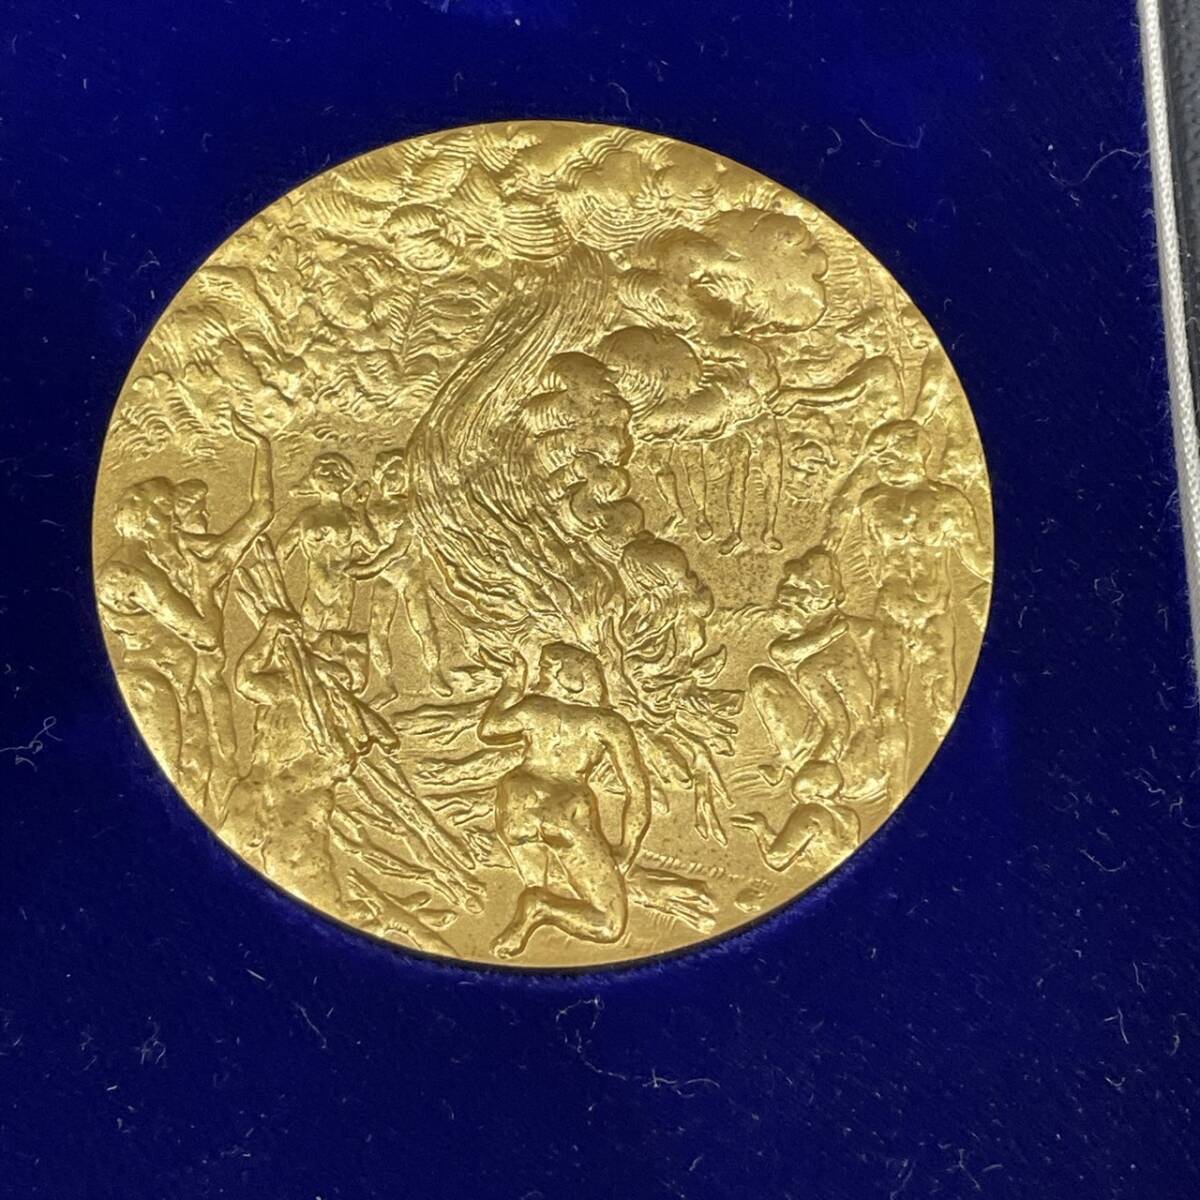 [TOA-5539] 1 иен ~ память медаль продажа комплектом Olympic Япония всемирная выставка EXPO структура . отдел монета золотой серебряный медь память коллекция текущее состояние хранение товар 